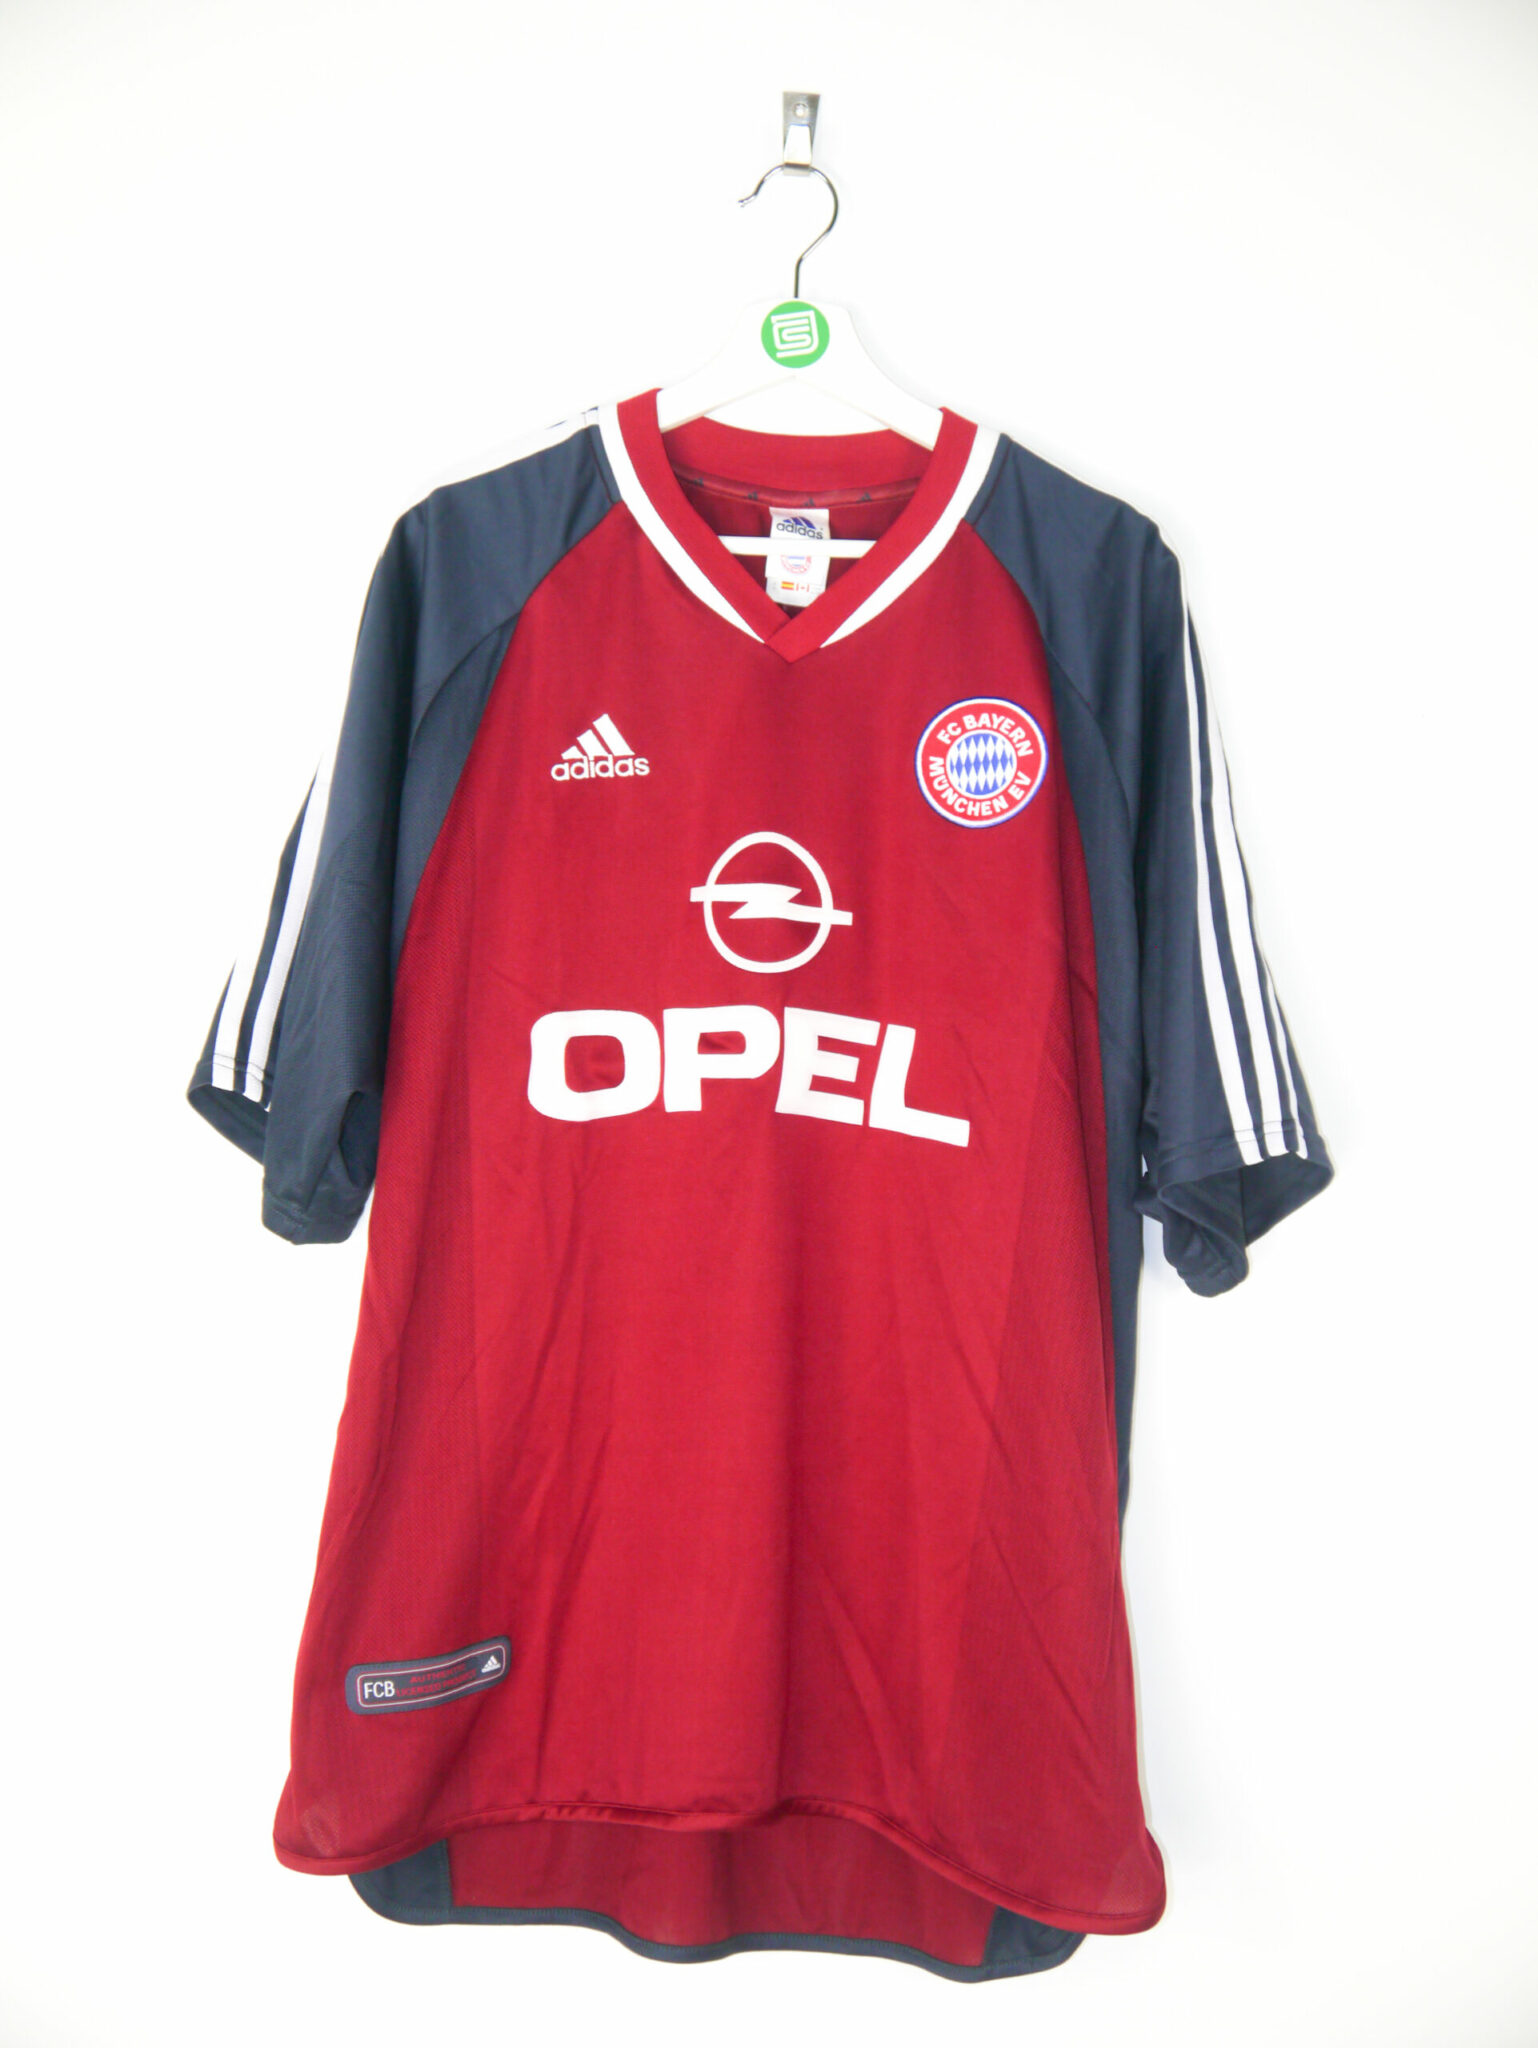 bayern munich jersey 2001